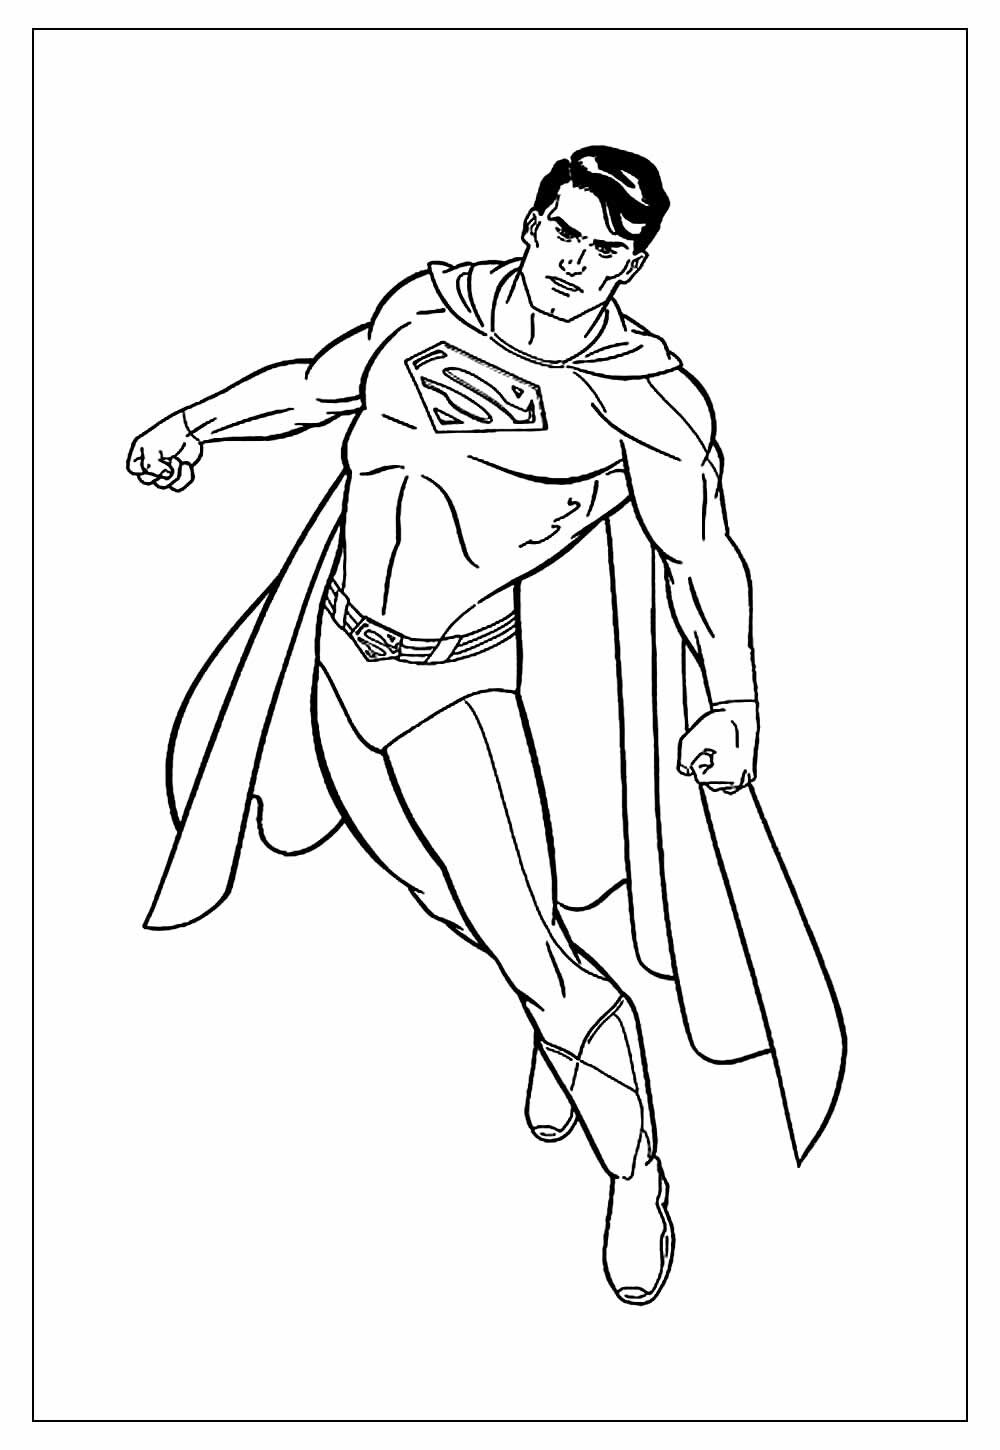 Desenho do Super-Homem para pintar e colorir